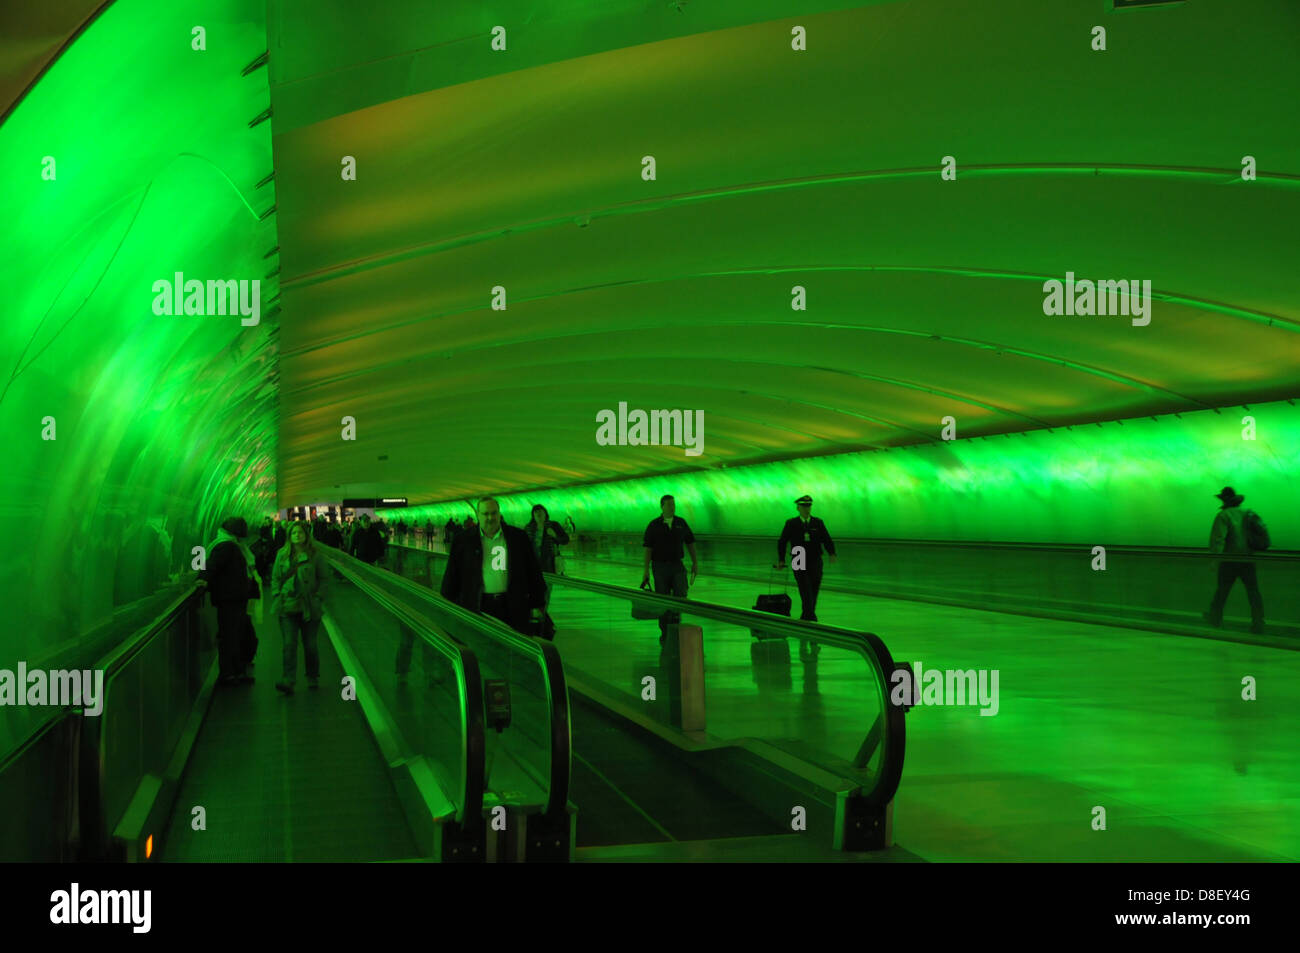 Ein beweglicher Teppich bringt Reisende in Richtung Zielort am internationalen Flughafen von Detroit wie farbige Lichter den Weg erleuchtet. Stockfoto